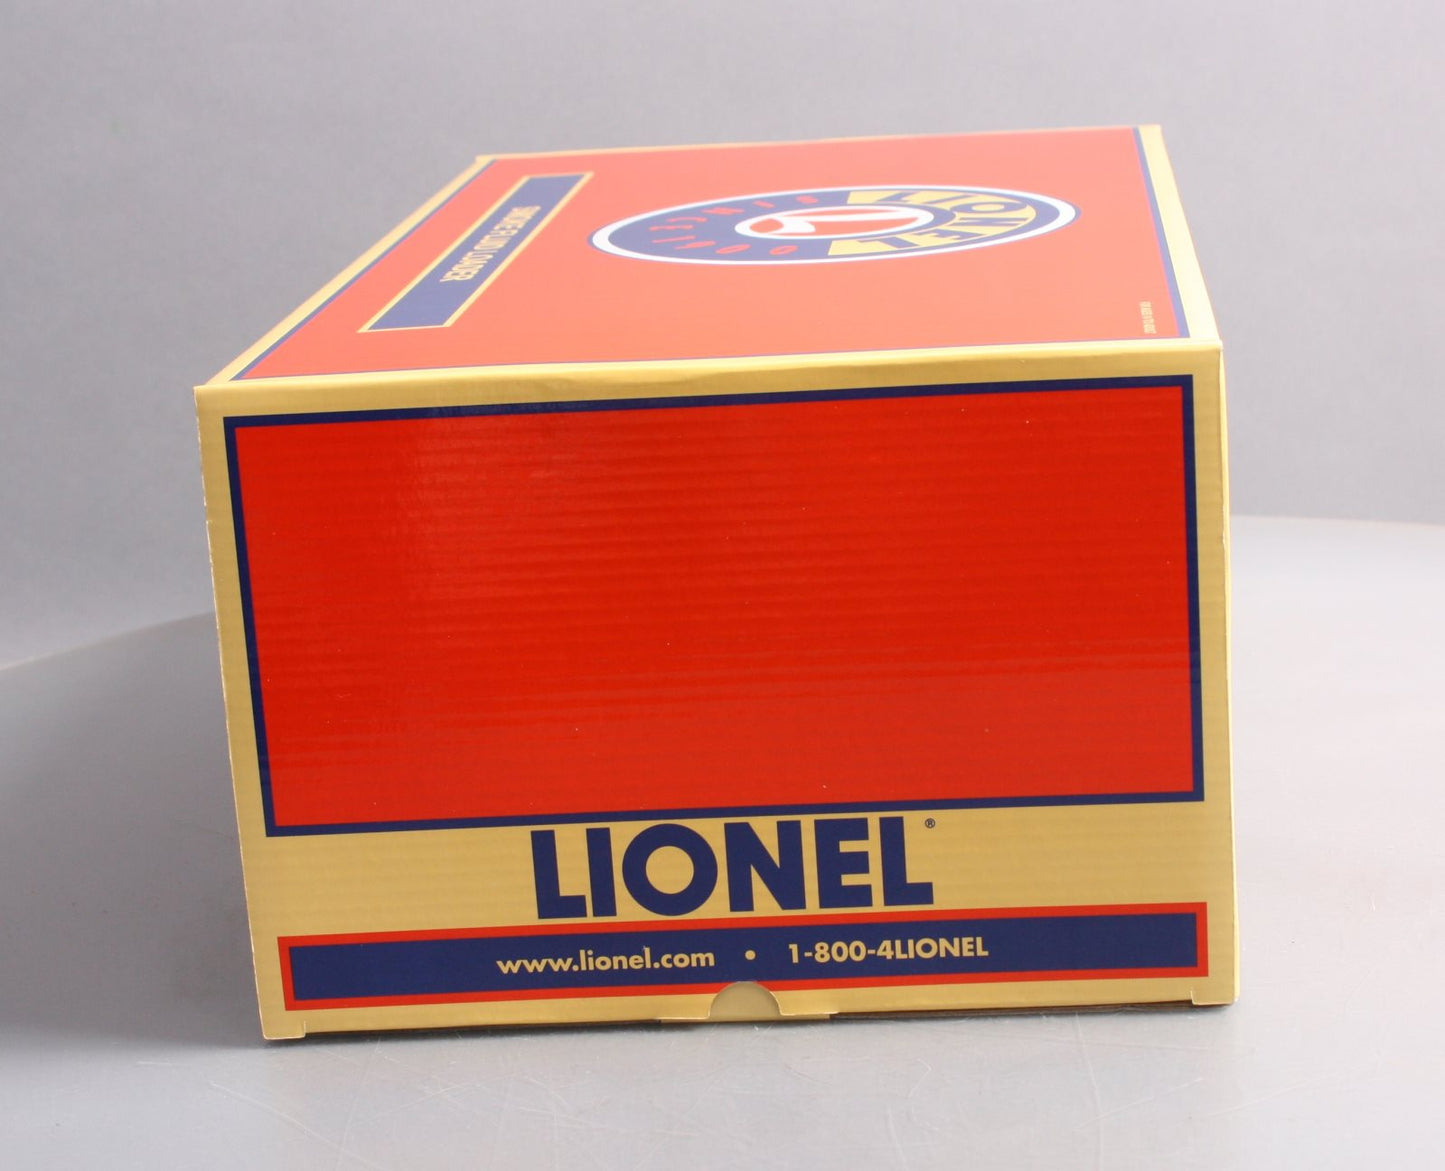 Lionel 6-83634 O Keystone Command Control Smoke Fluid Loader